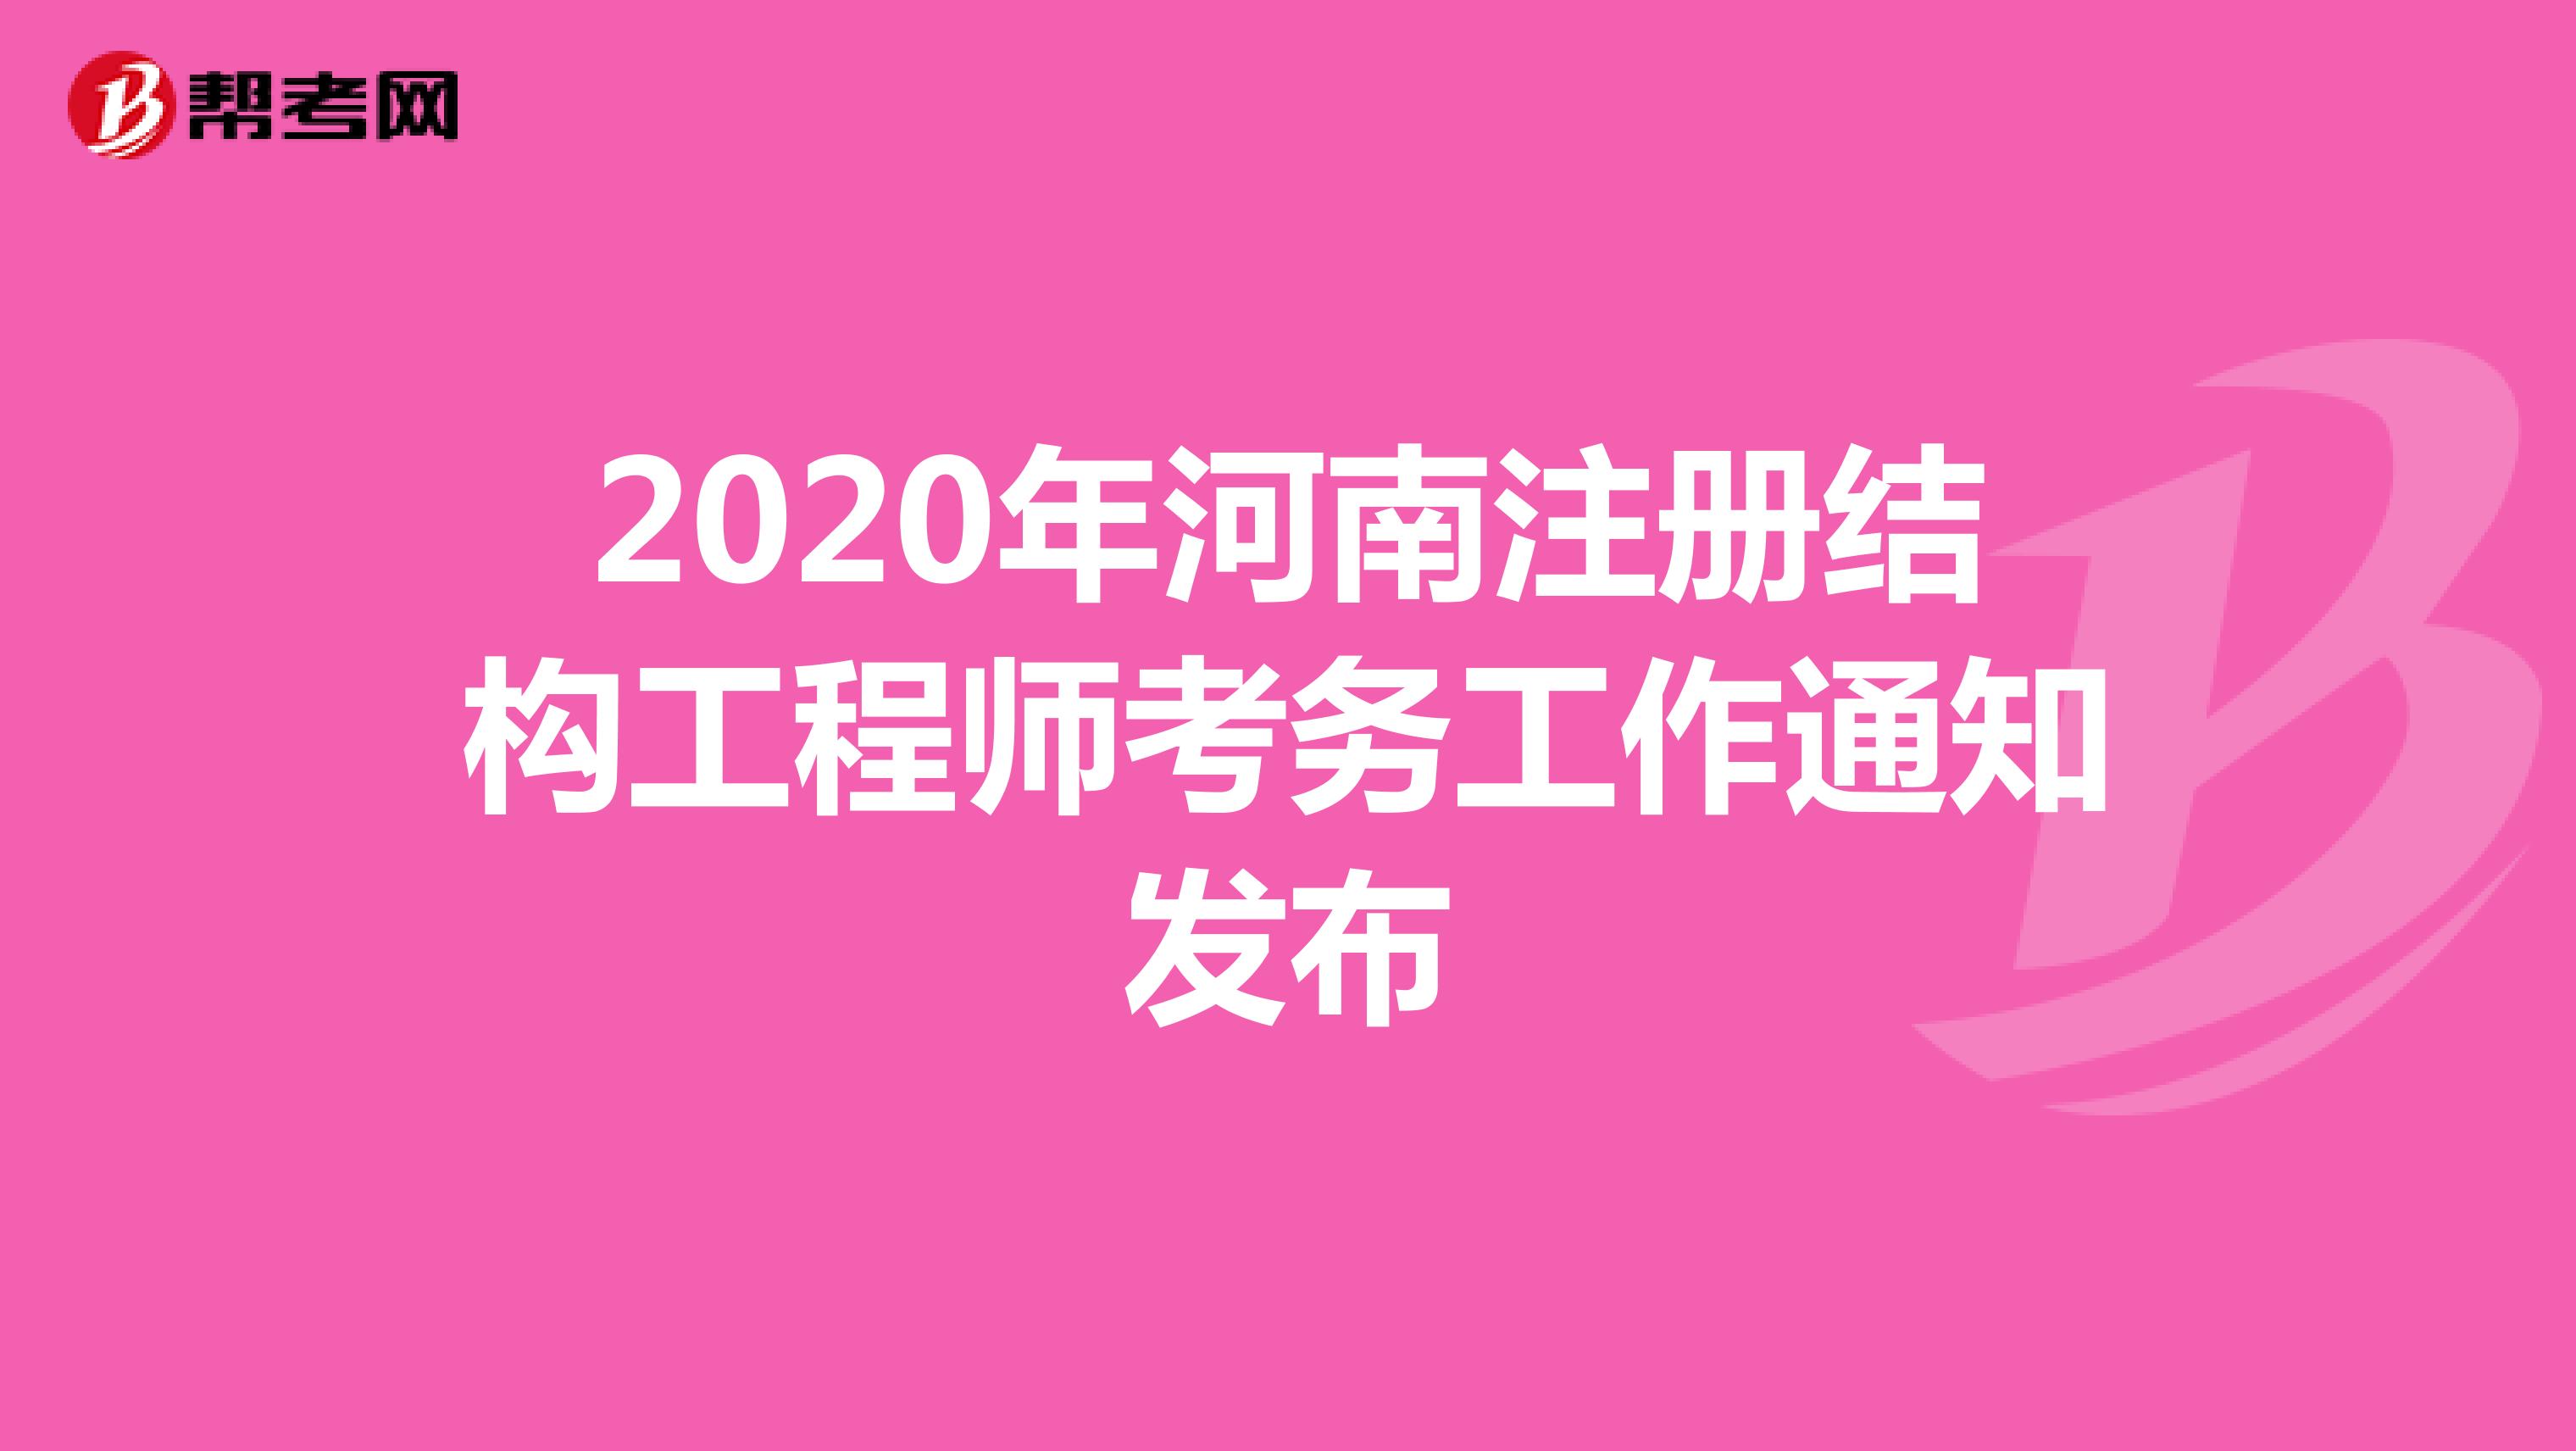 2020年河南注册结构工程师考务工作通知发布